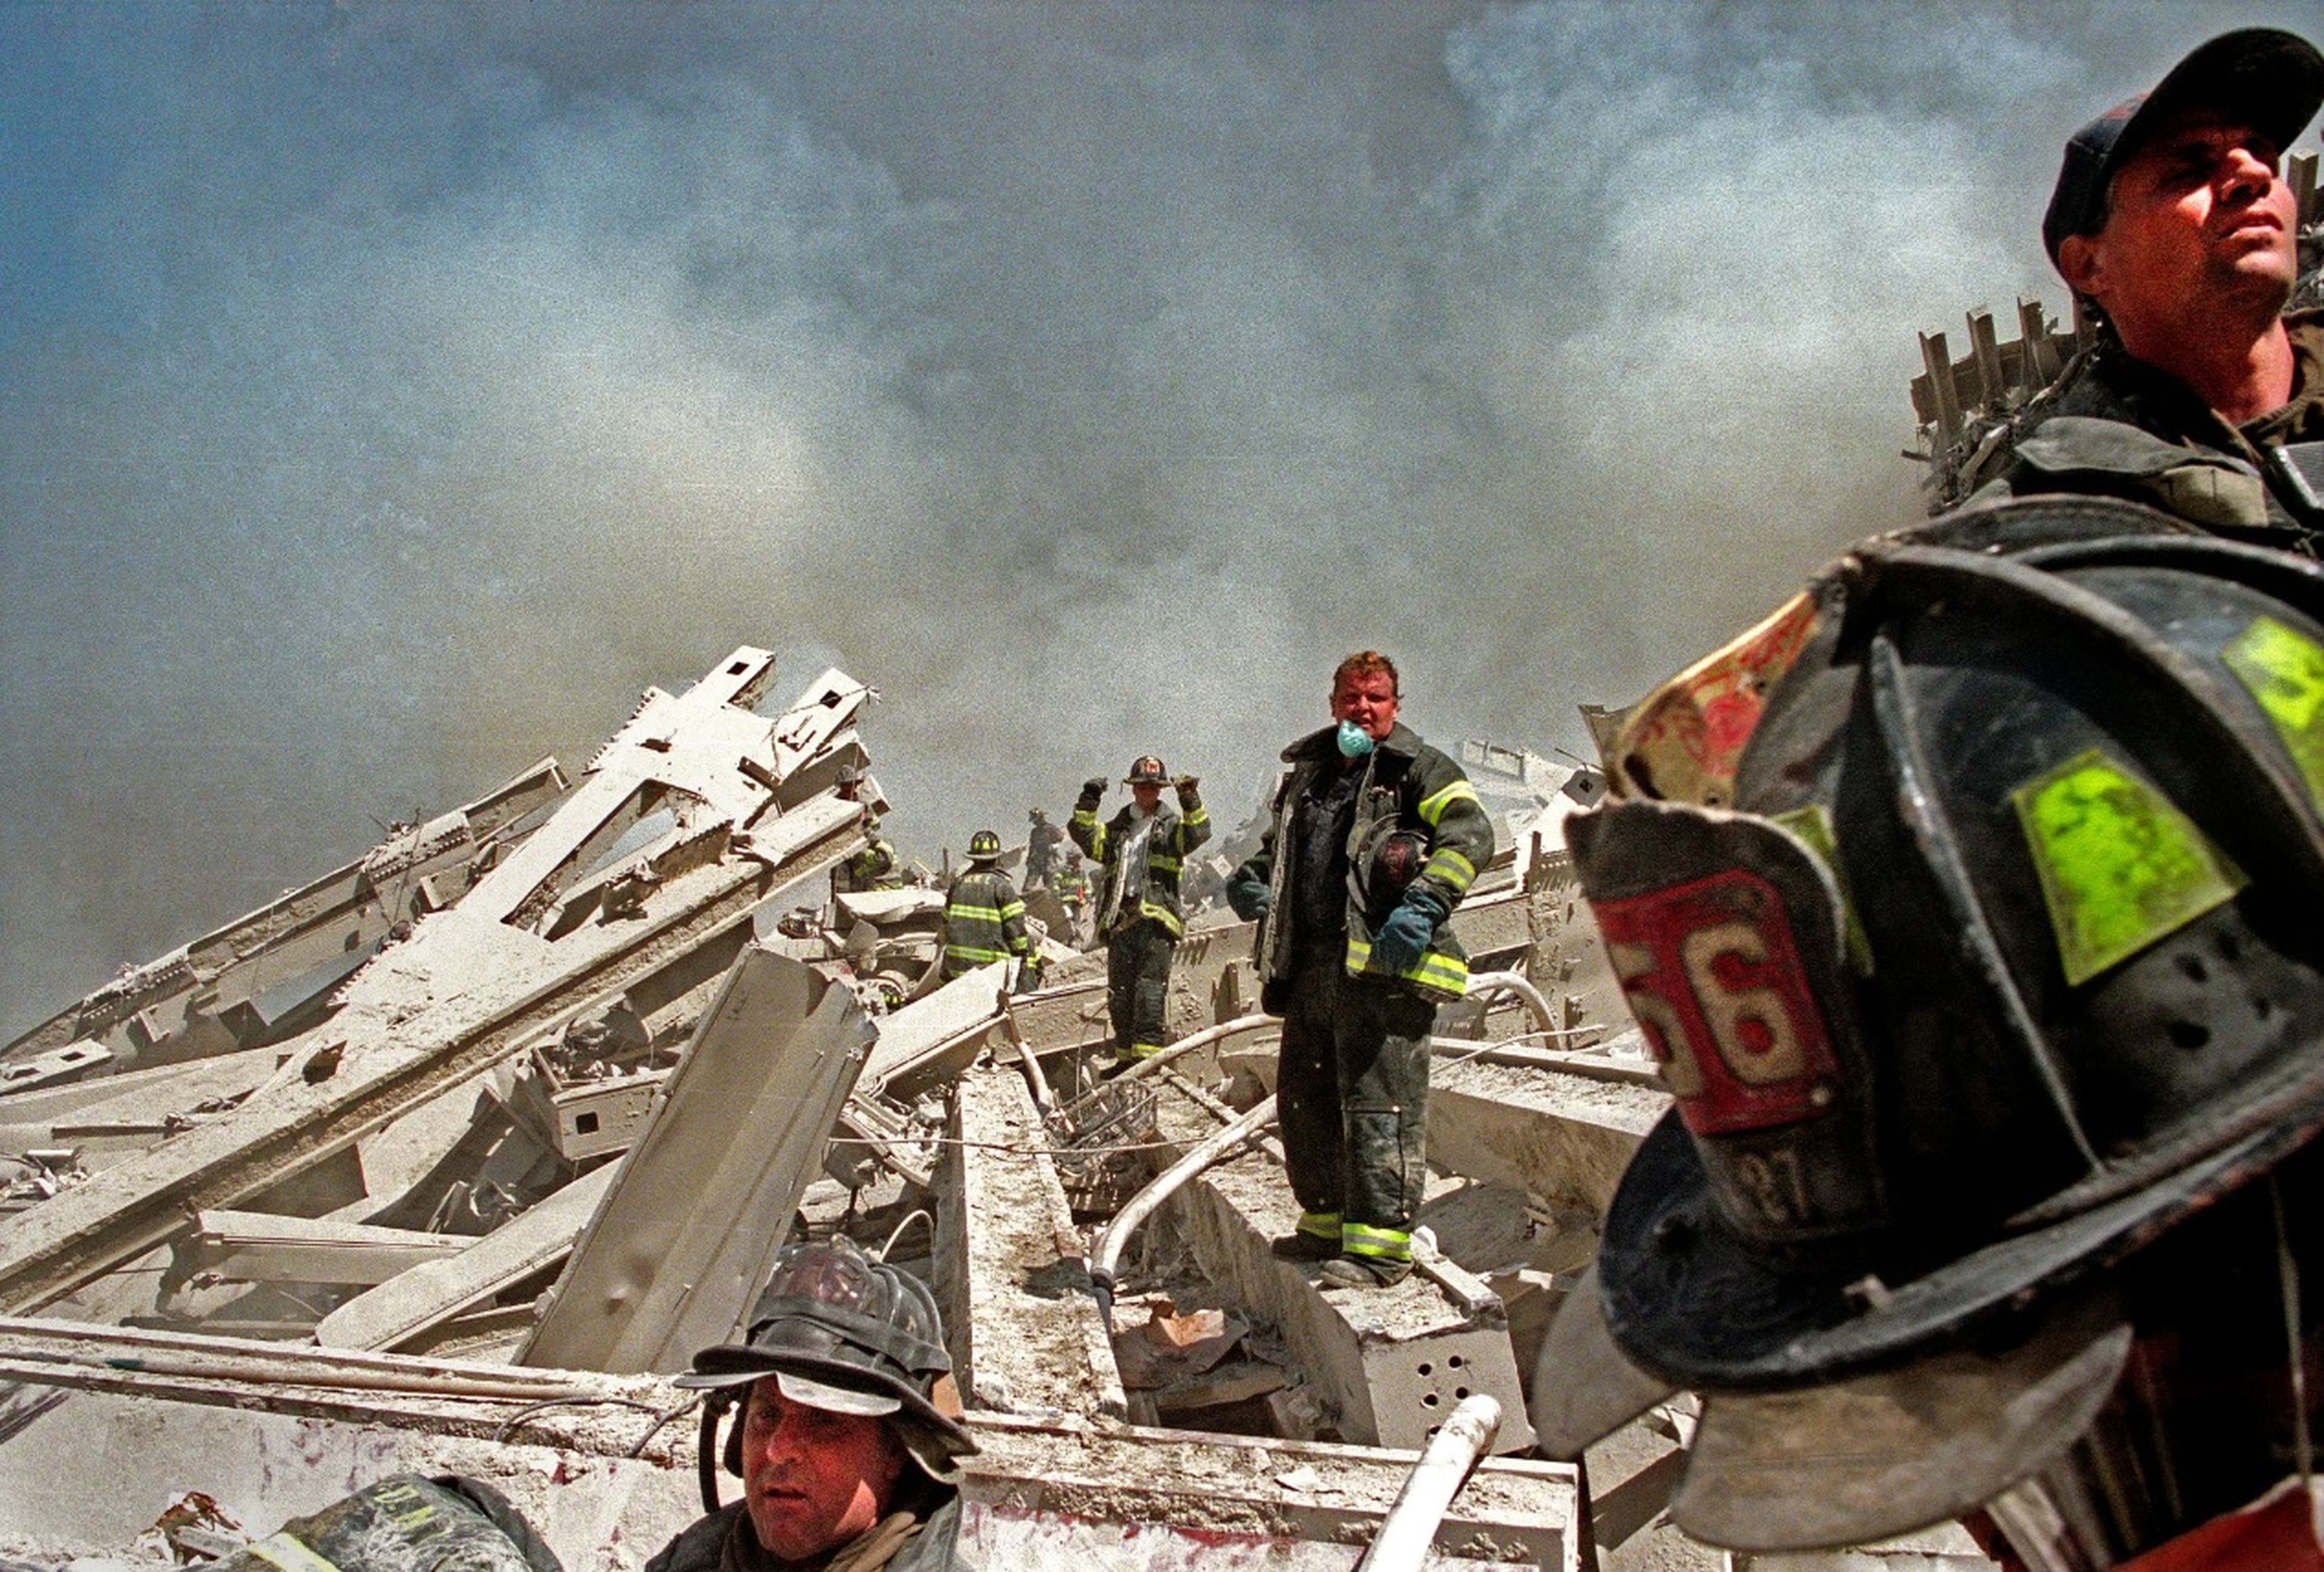 Los bomberos formaron una línea para recoger los restos de la Torre Sur del World Trade Center, en una infructuosa búsqueda de supervivientes.